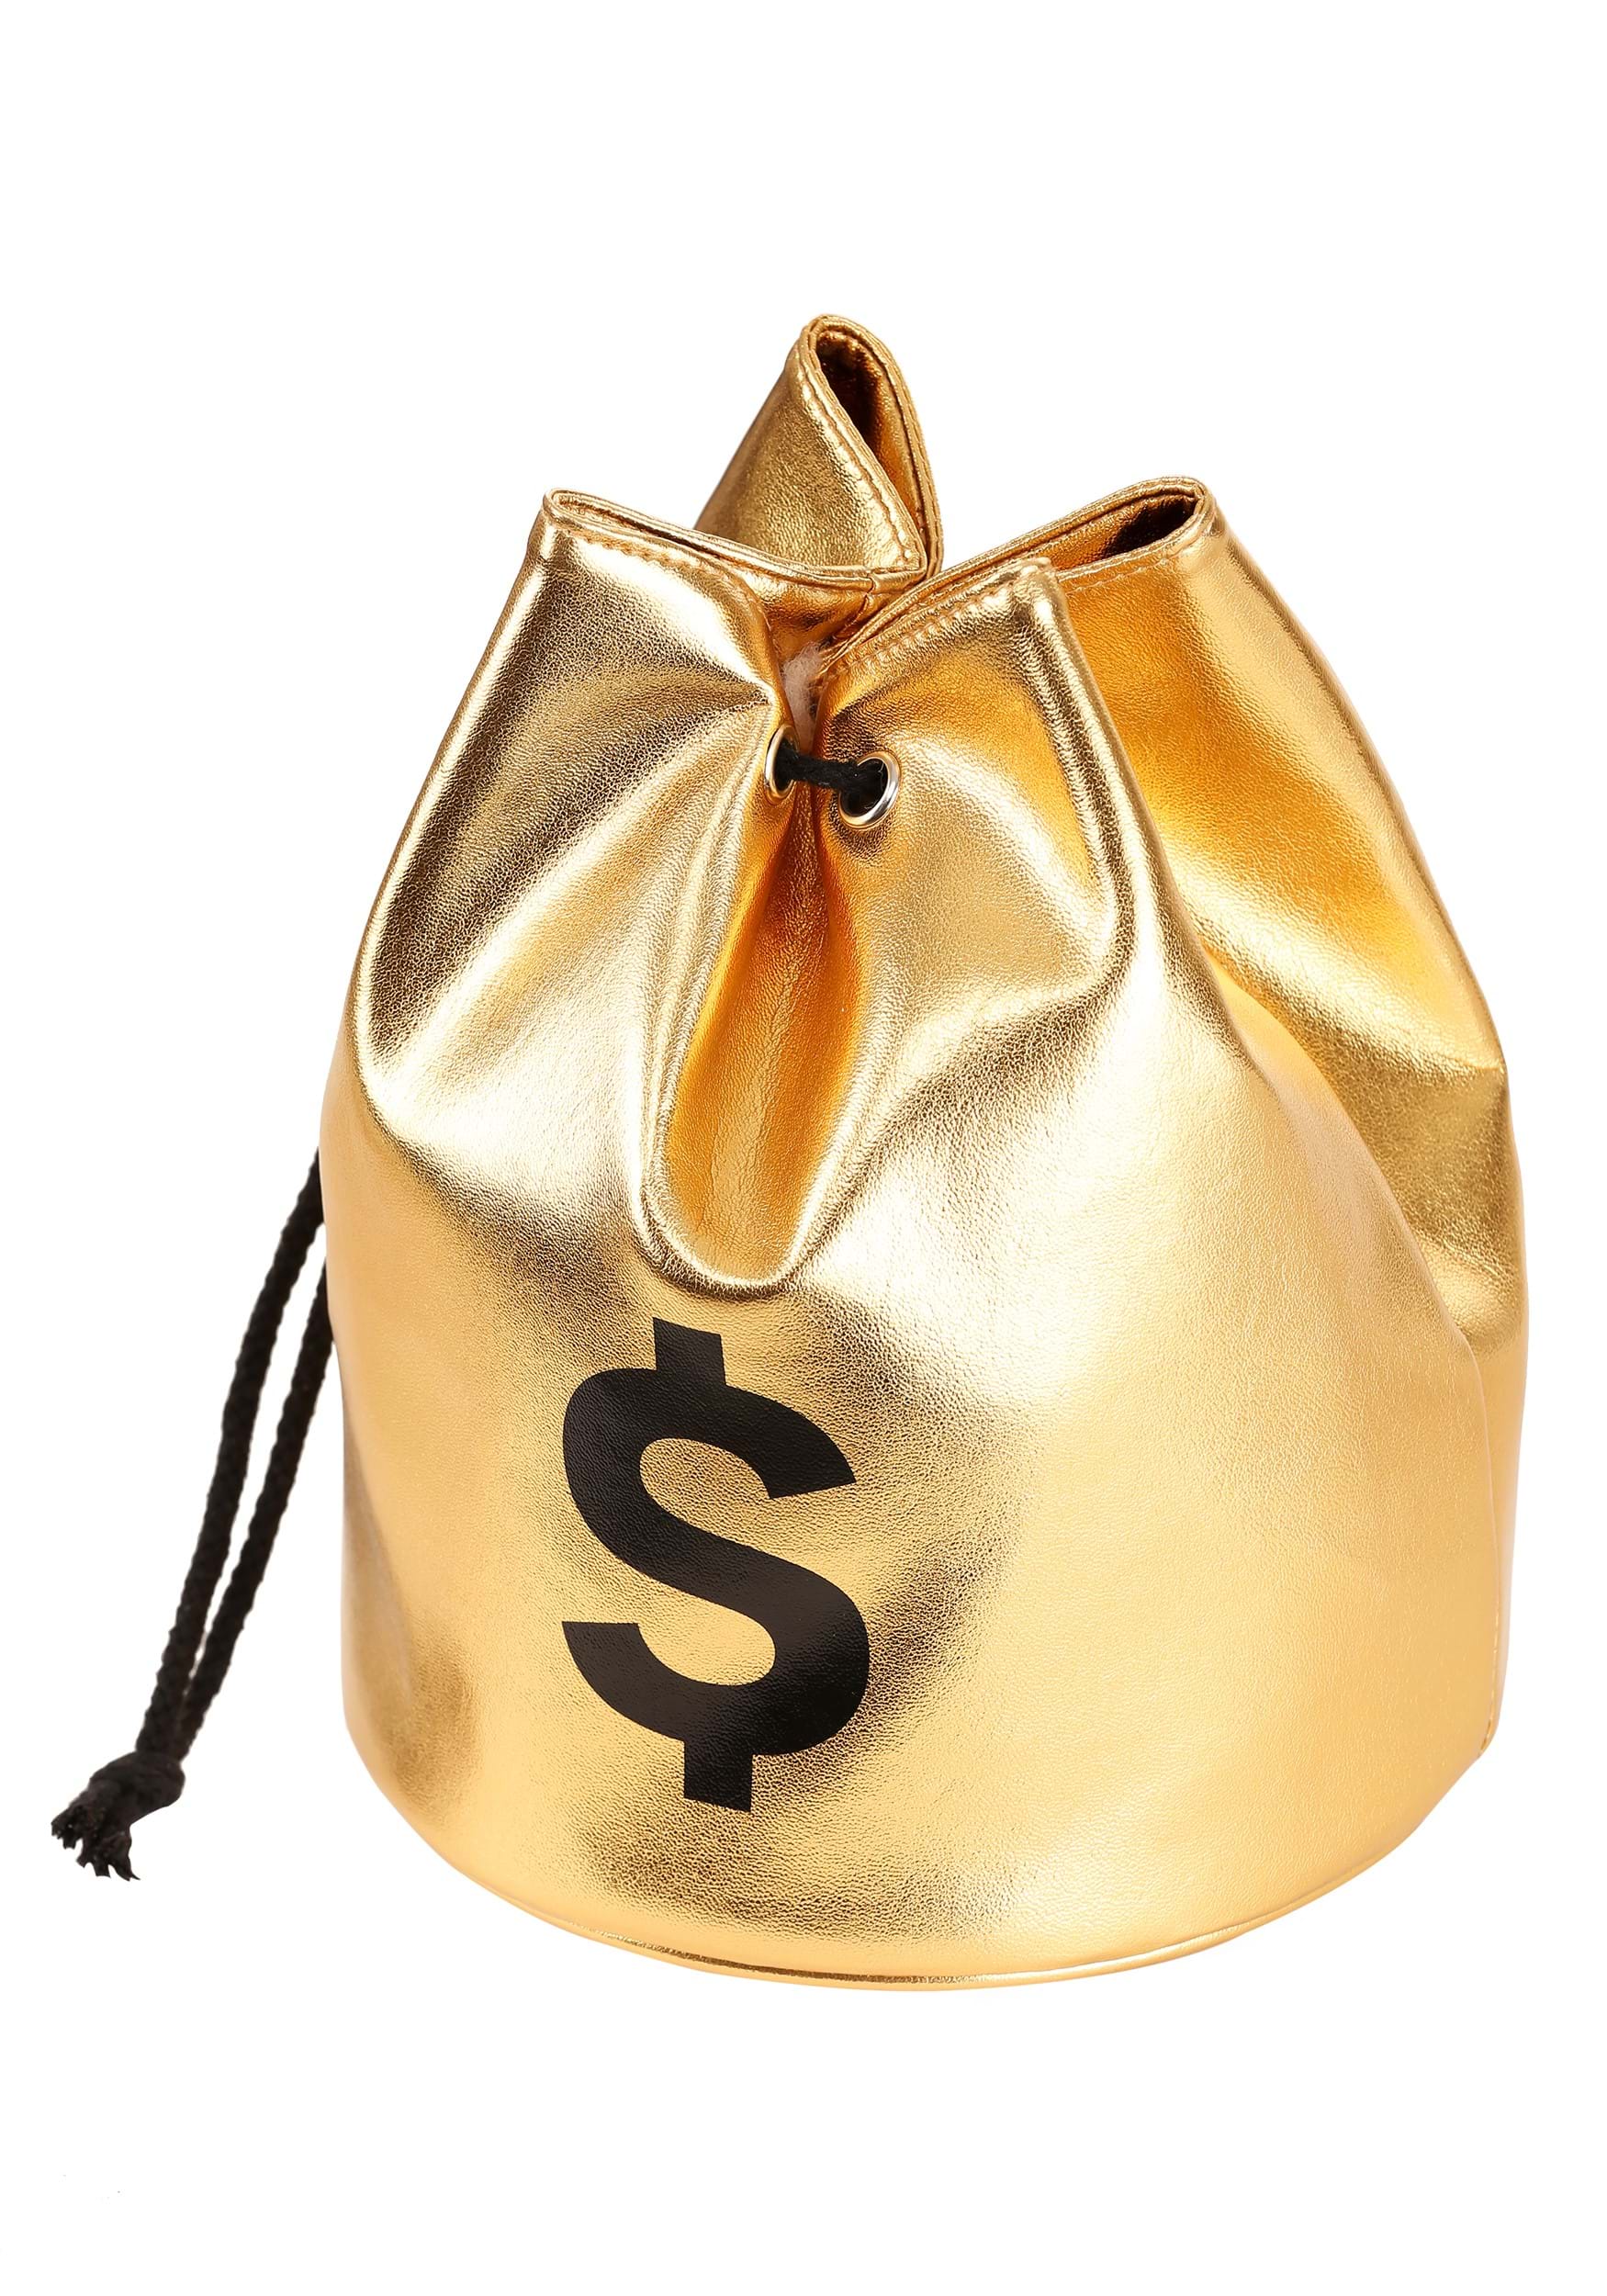 moneybag purse